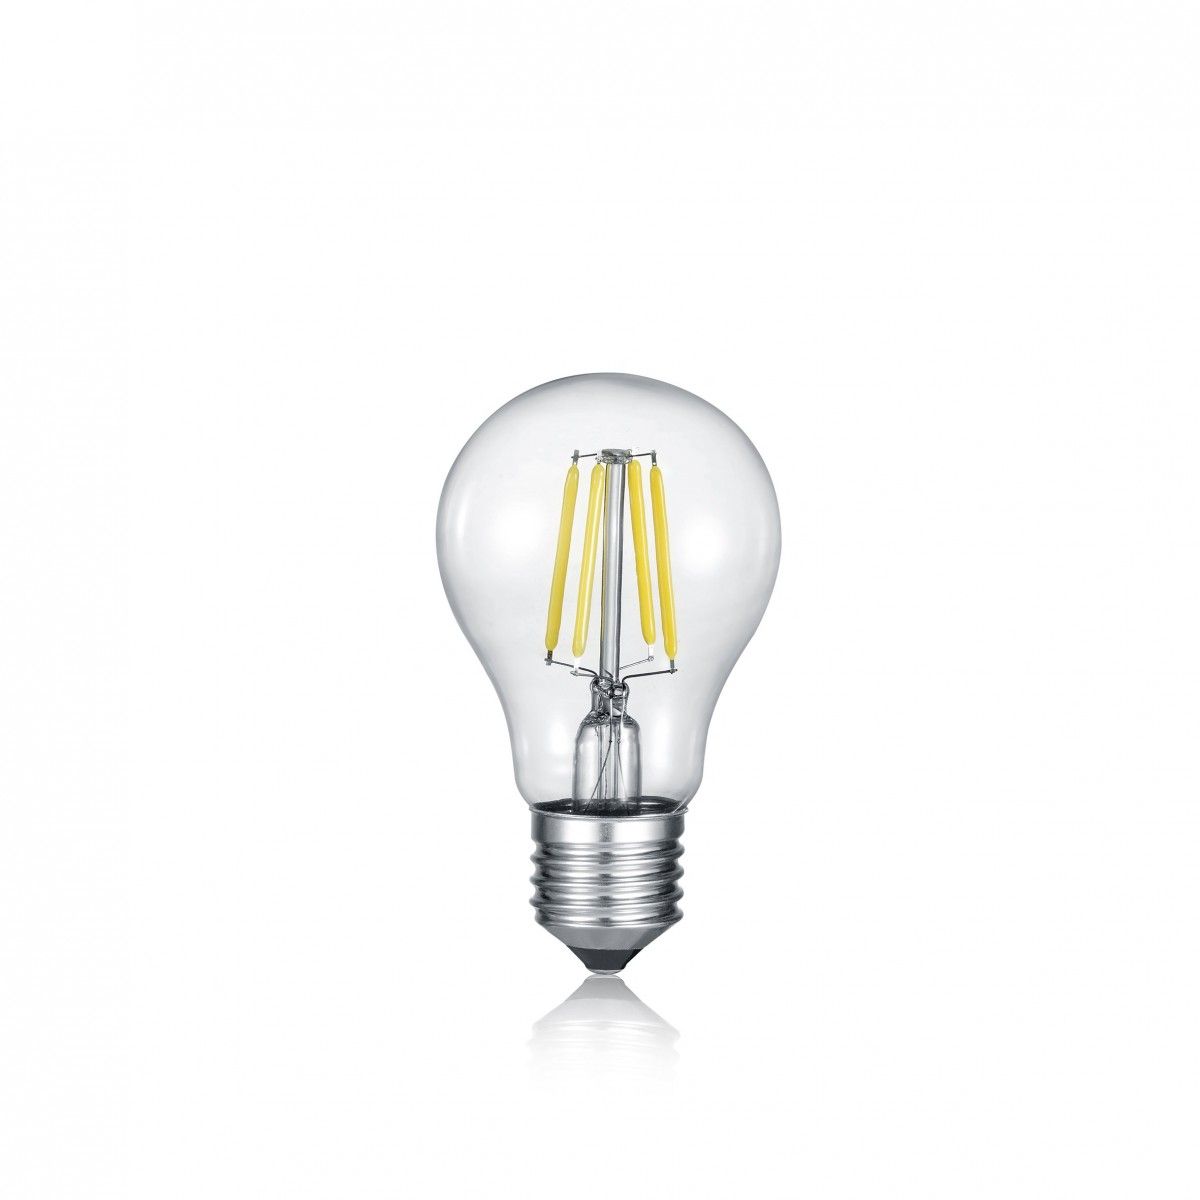 Trio R987-880 LED inteligentní filamentová žárovka 1x6,5W | E27 | 806lm | 2700-6500K - WiZ, integrovaný stmívač - 